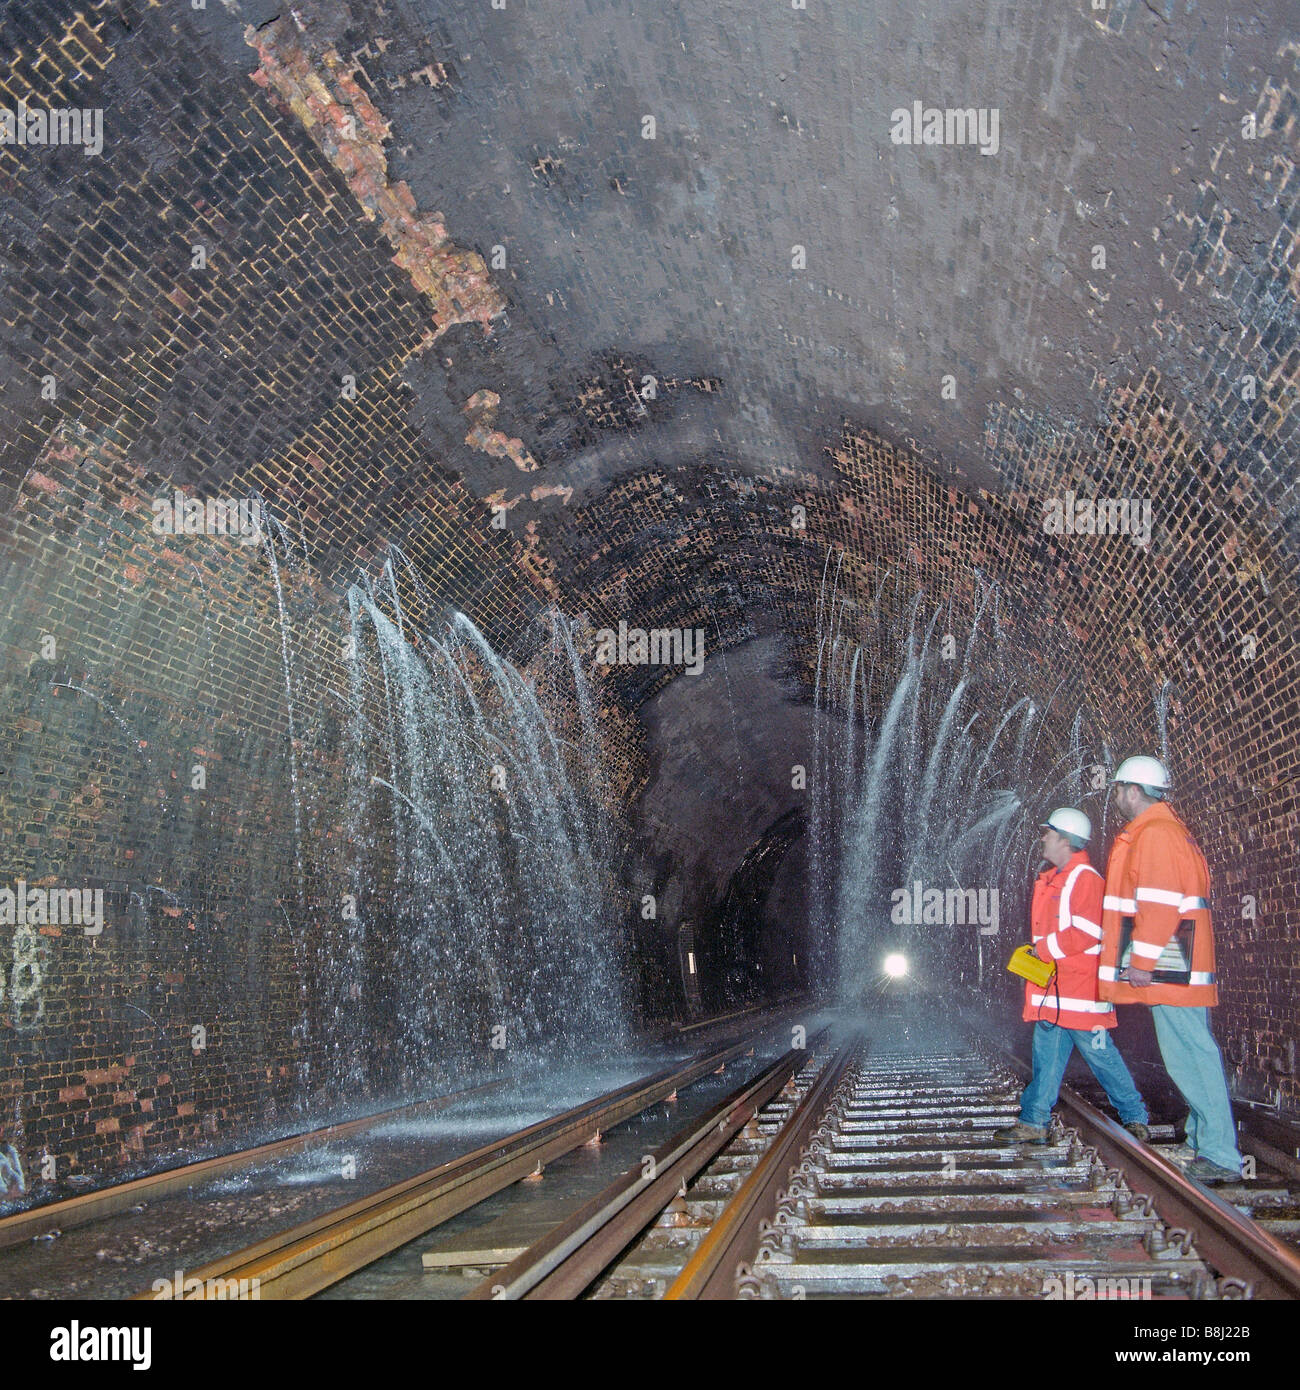 Fuite d'eau dans le tunnel ferroviaire à la suite de fortes pluies. Les drains de l'eau spéciale supprimer ce permet aux trains pour l'exploitation en toute sécurité. Banque D'Images